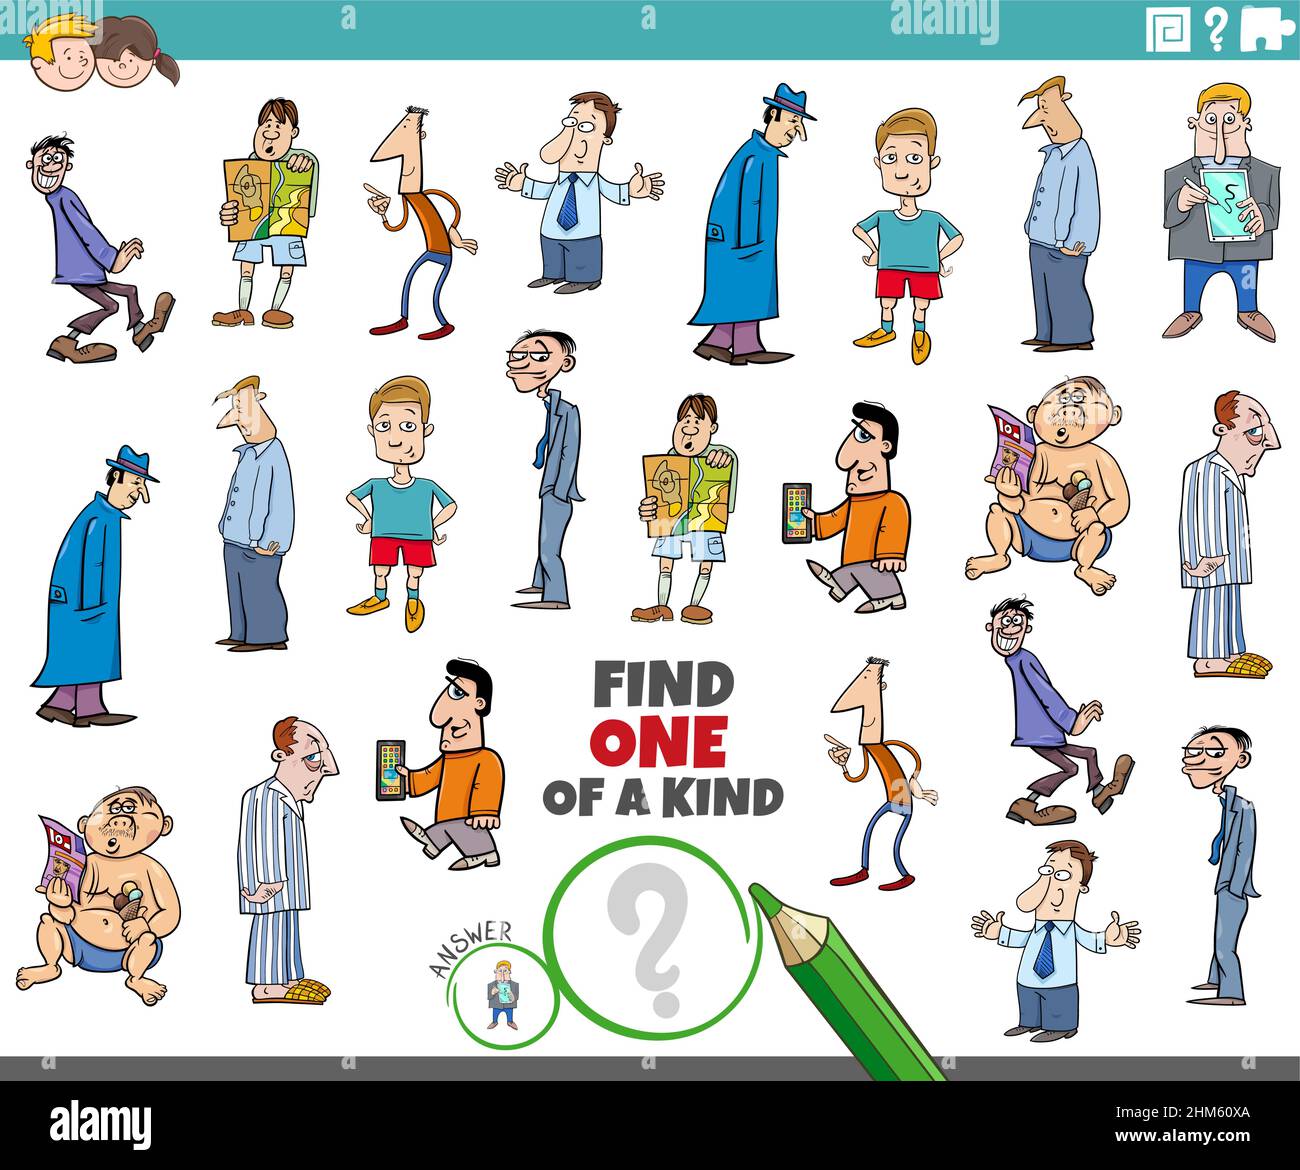 Illustrazione di cartoon di trovare uno di un compito educativo immagine con personaggi fumetti uomini Illustrazione Vettoriale